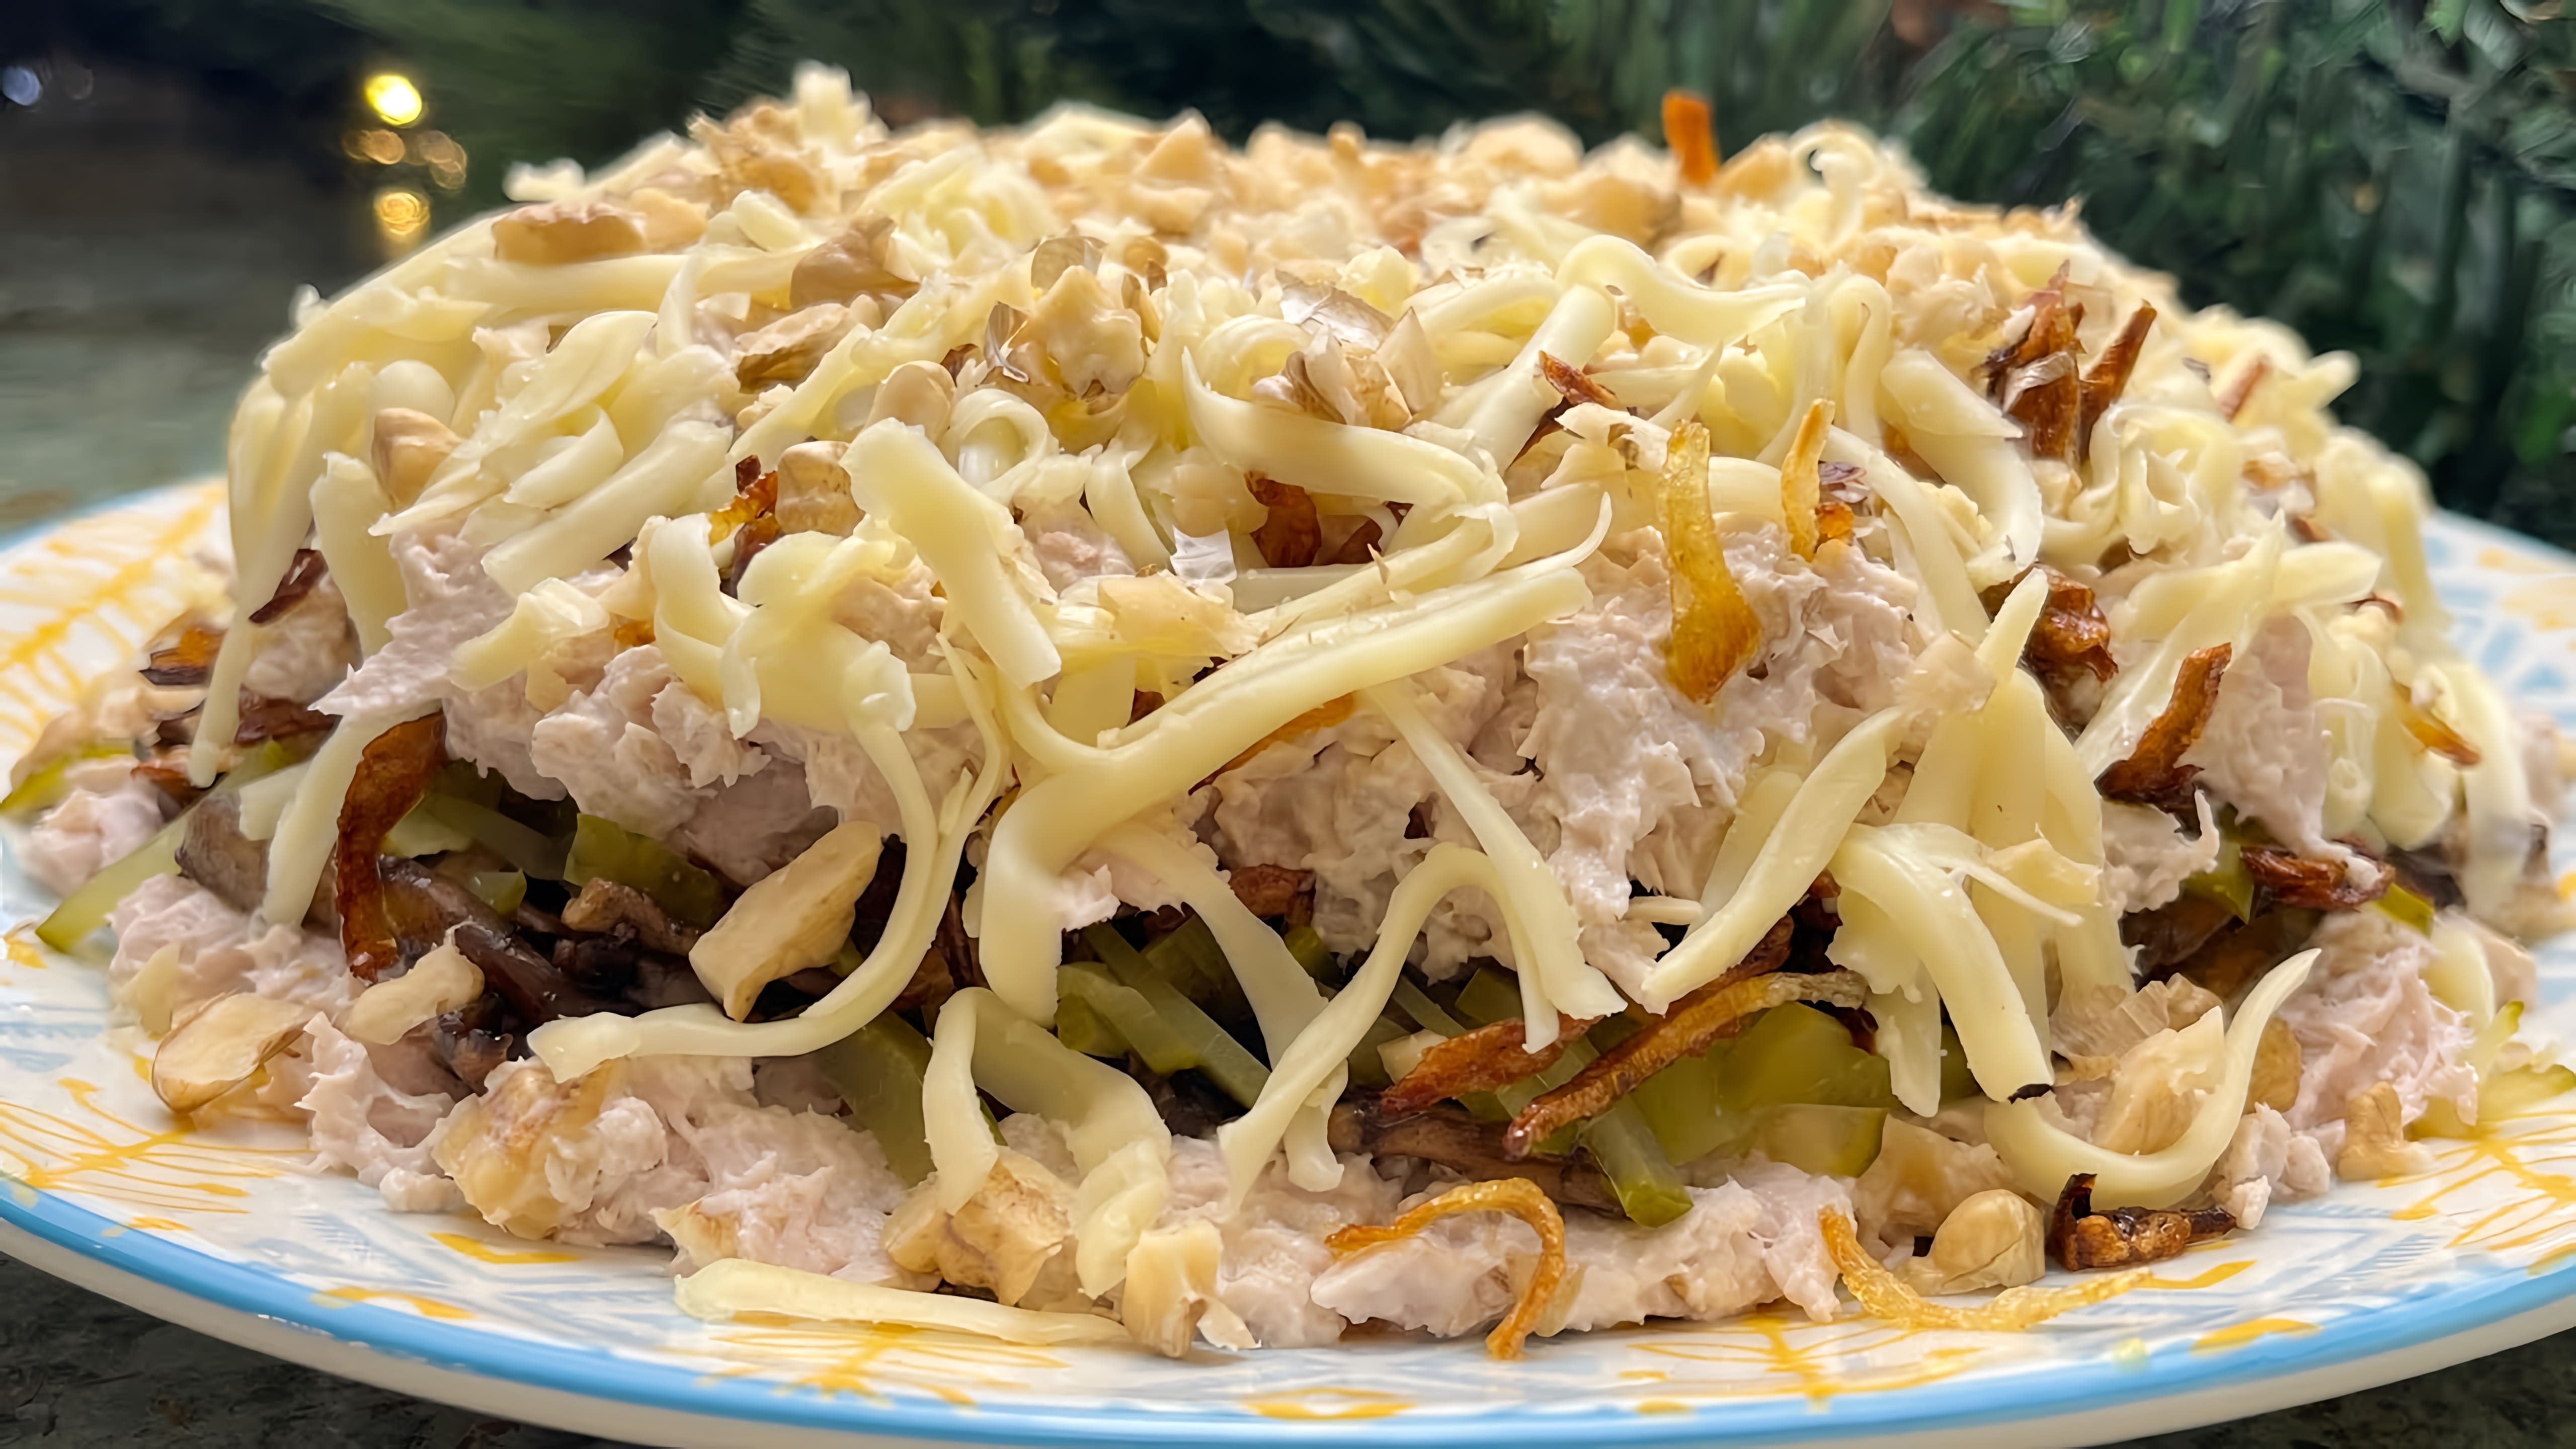 В этом видео демонстрируется рецепт приготовления идеального салата из куриной грудки для праздничного стола